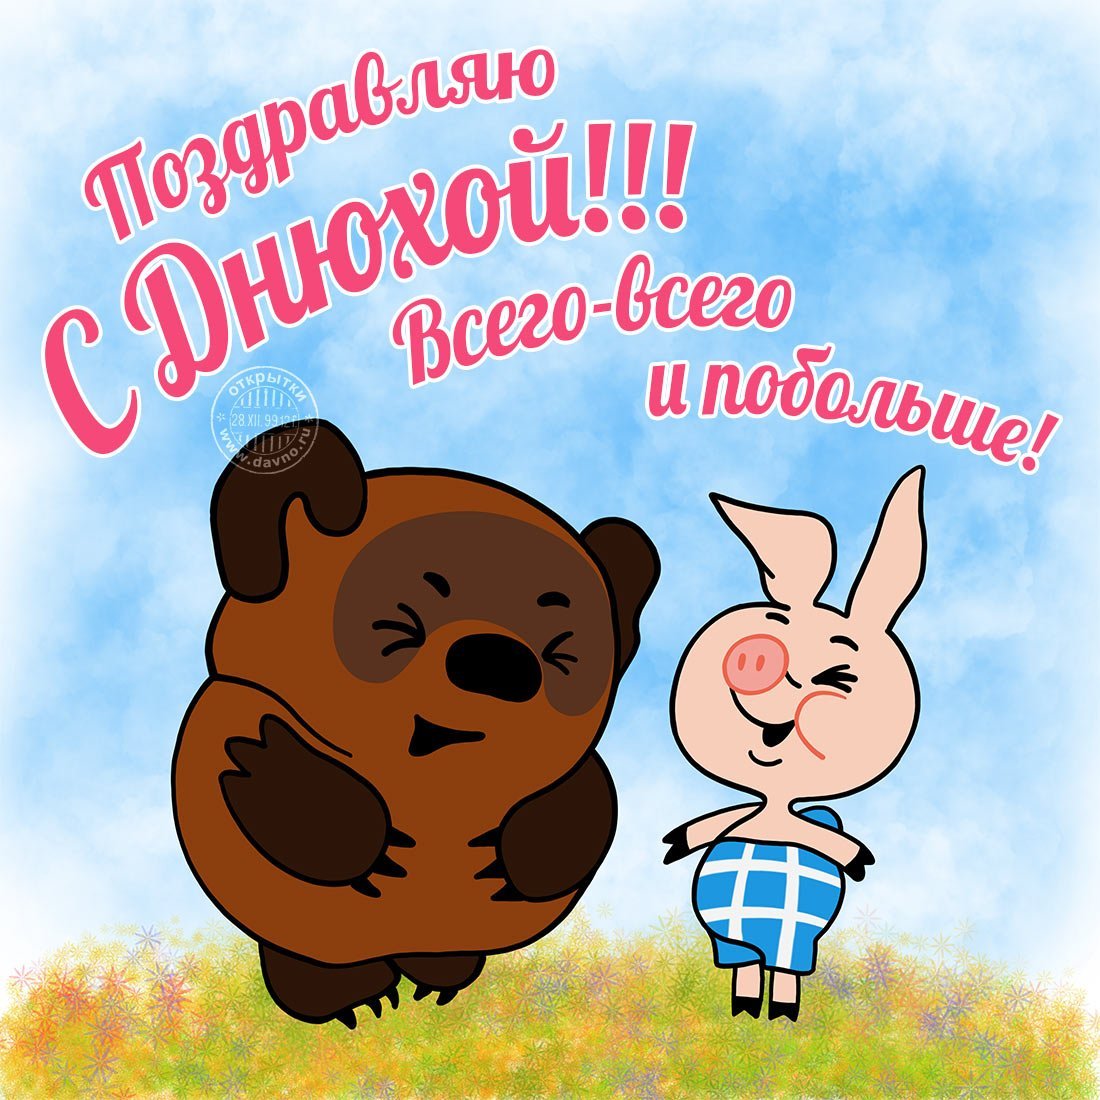 Матерные поздравления с днем рождения другу в стихах на русском языке